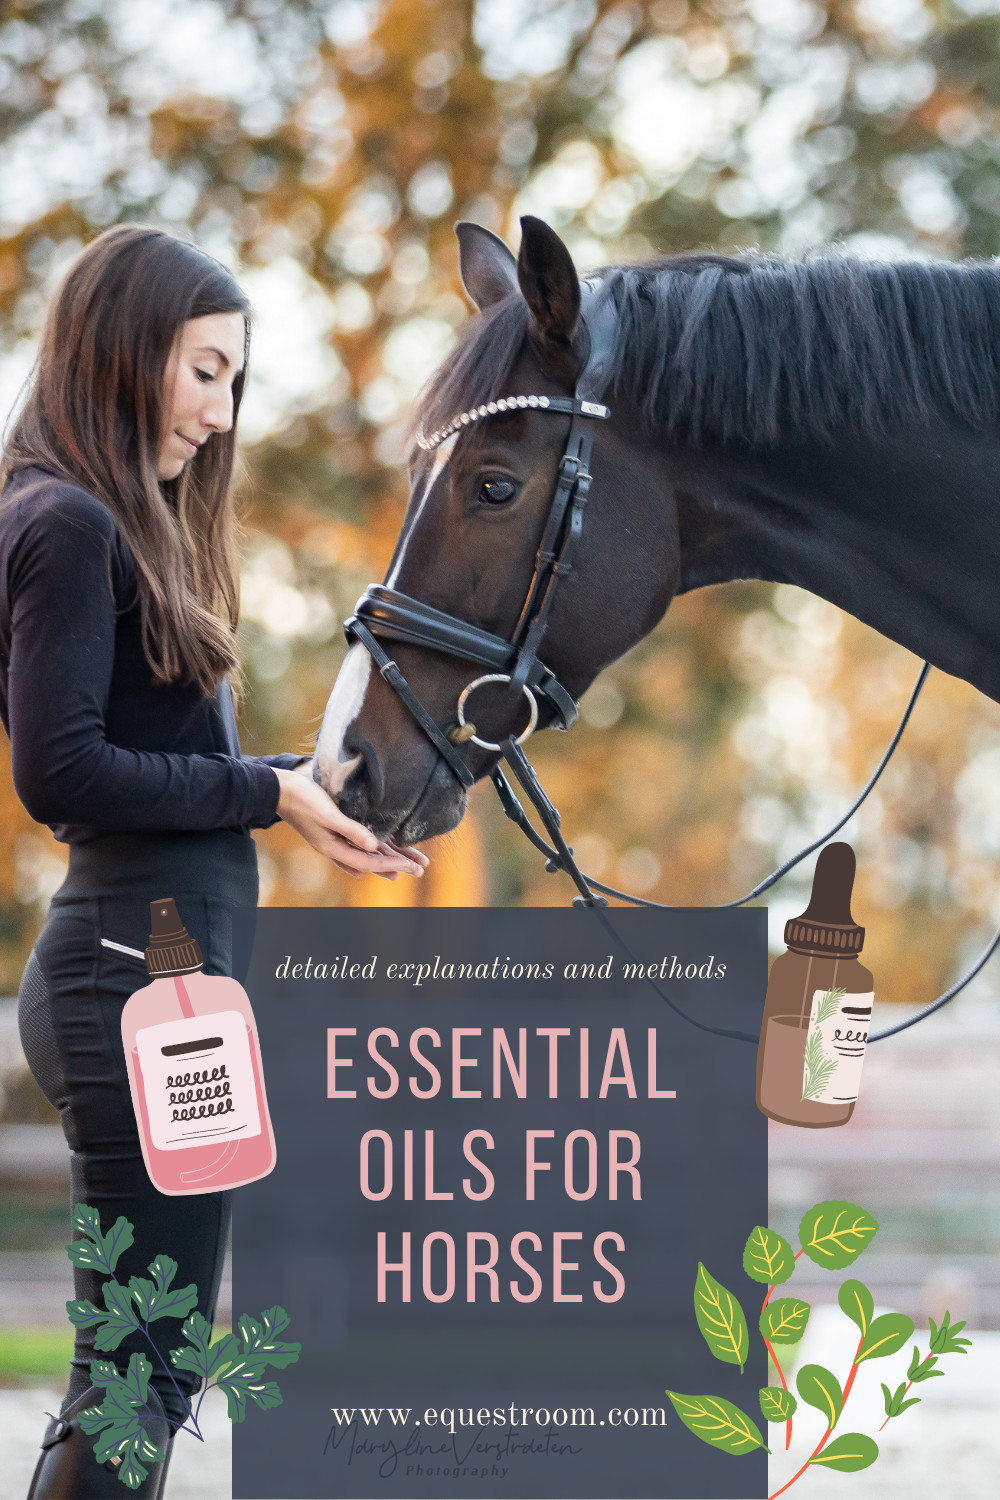 ESSENTIAL OILS FOR HORSES